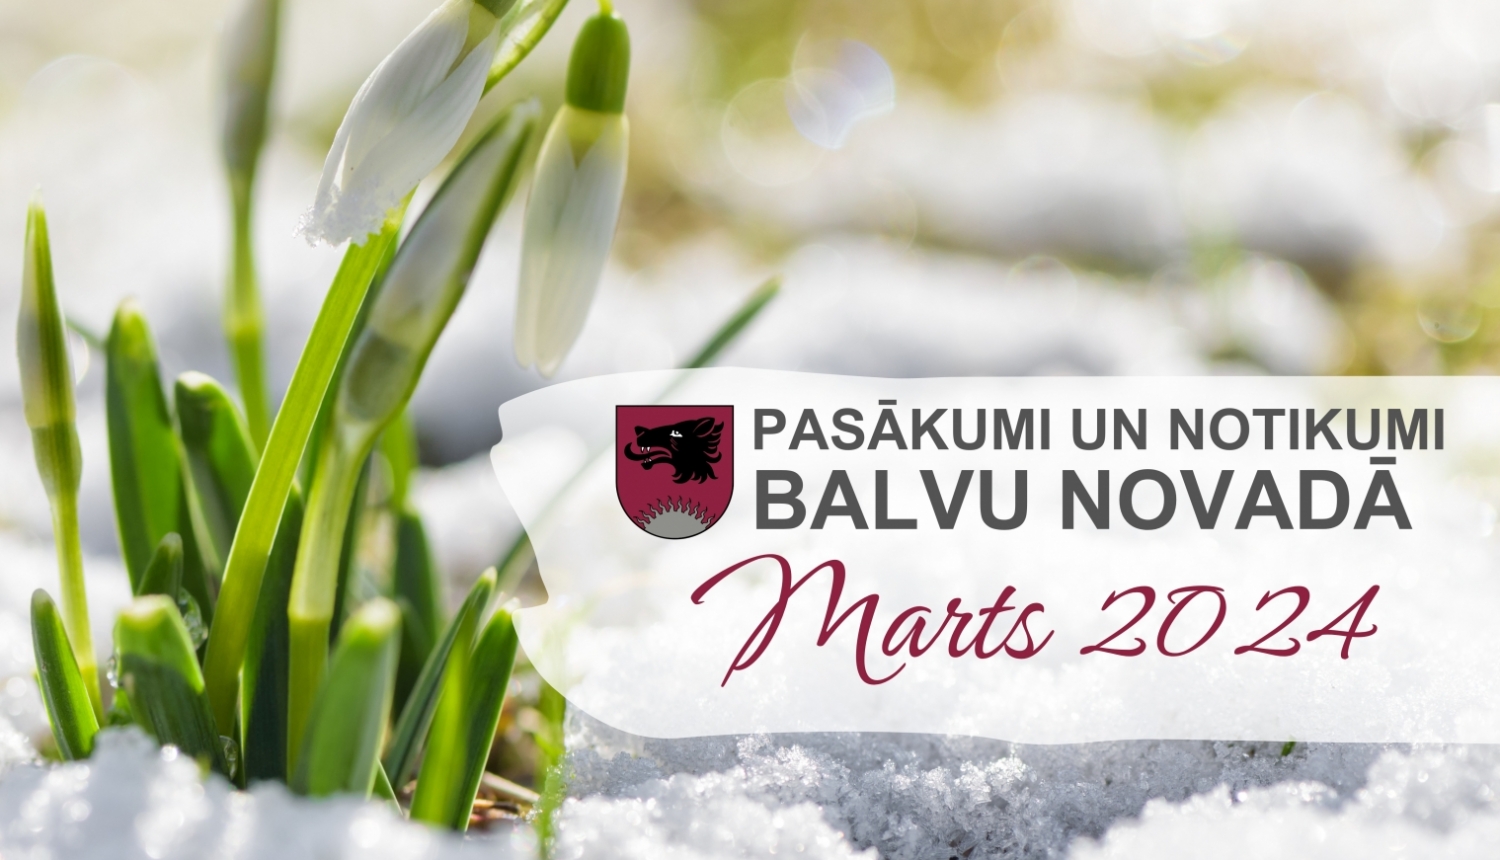 Balvu novada kultūras pasākumu plāns - 2024. gada marts